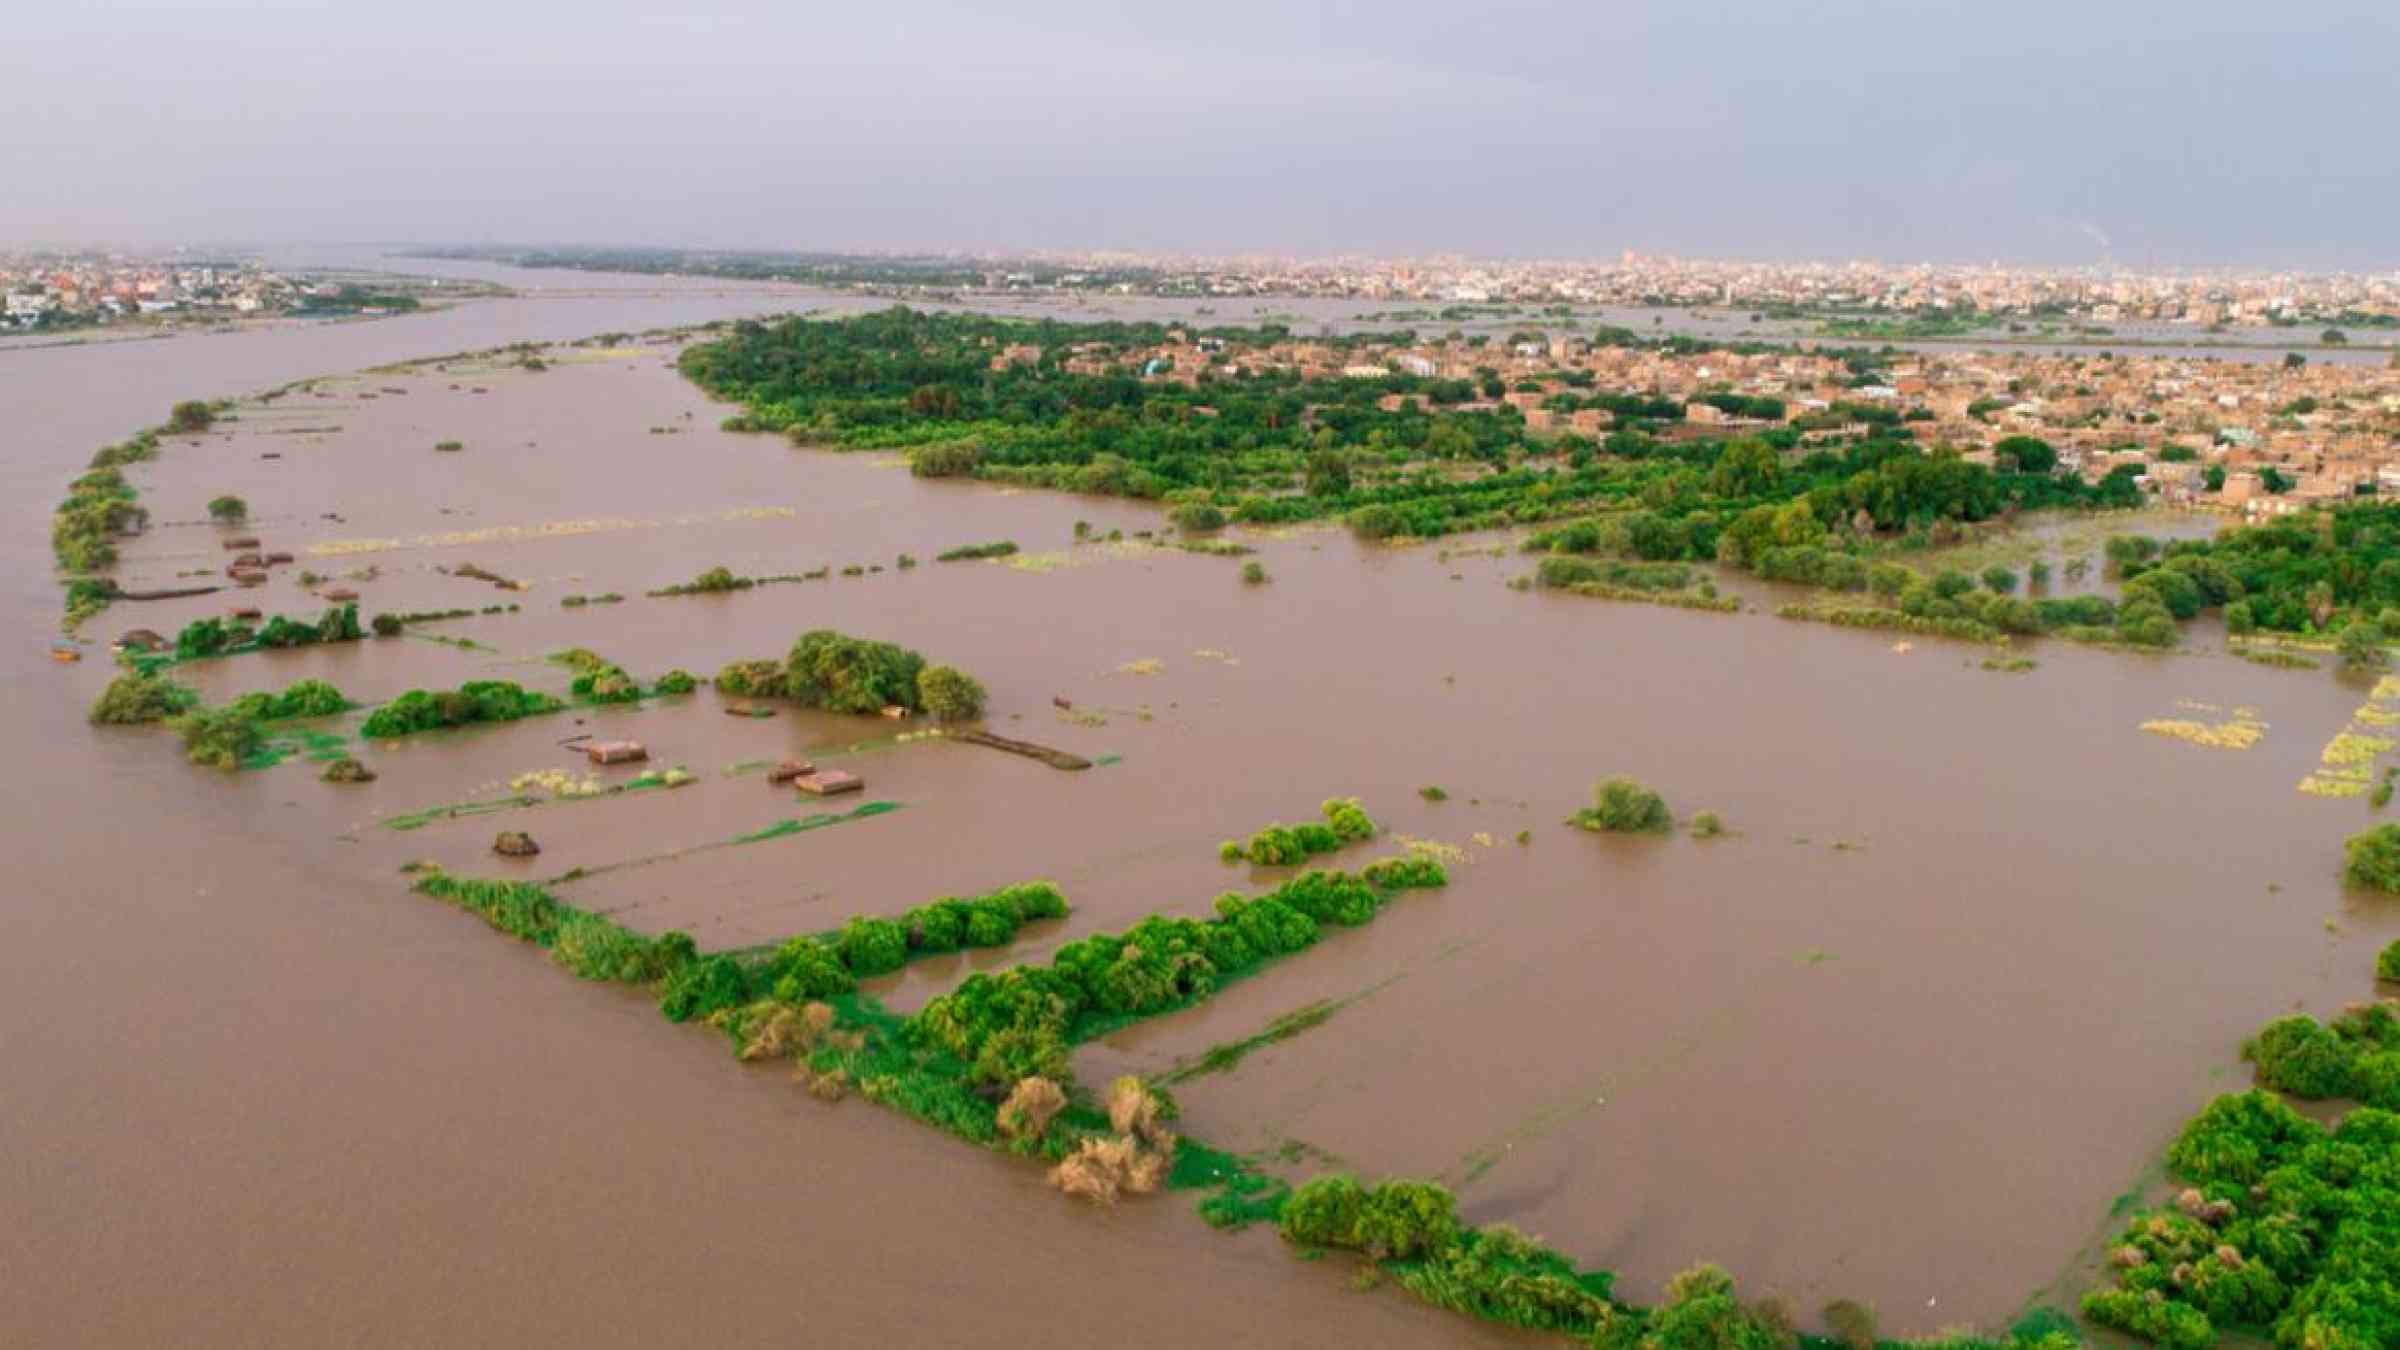 The city of Khartoum, Sudan impacted by floods in September 2020. lier 4 life/Shutterstock